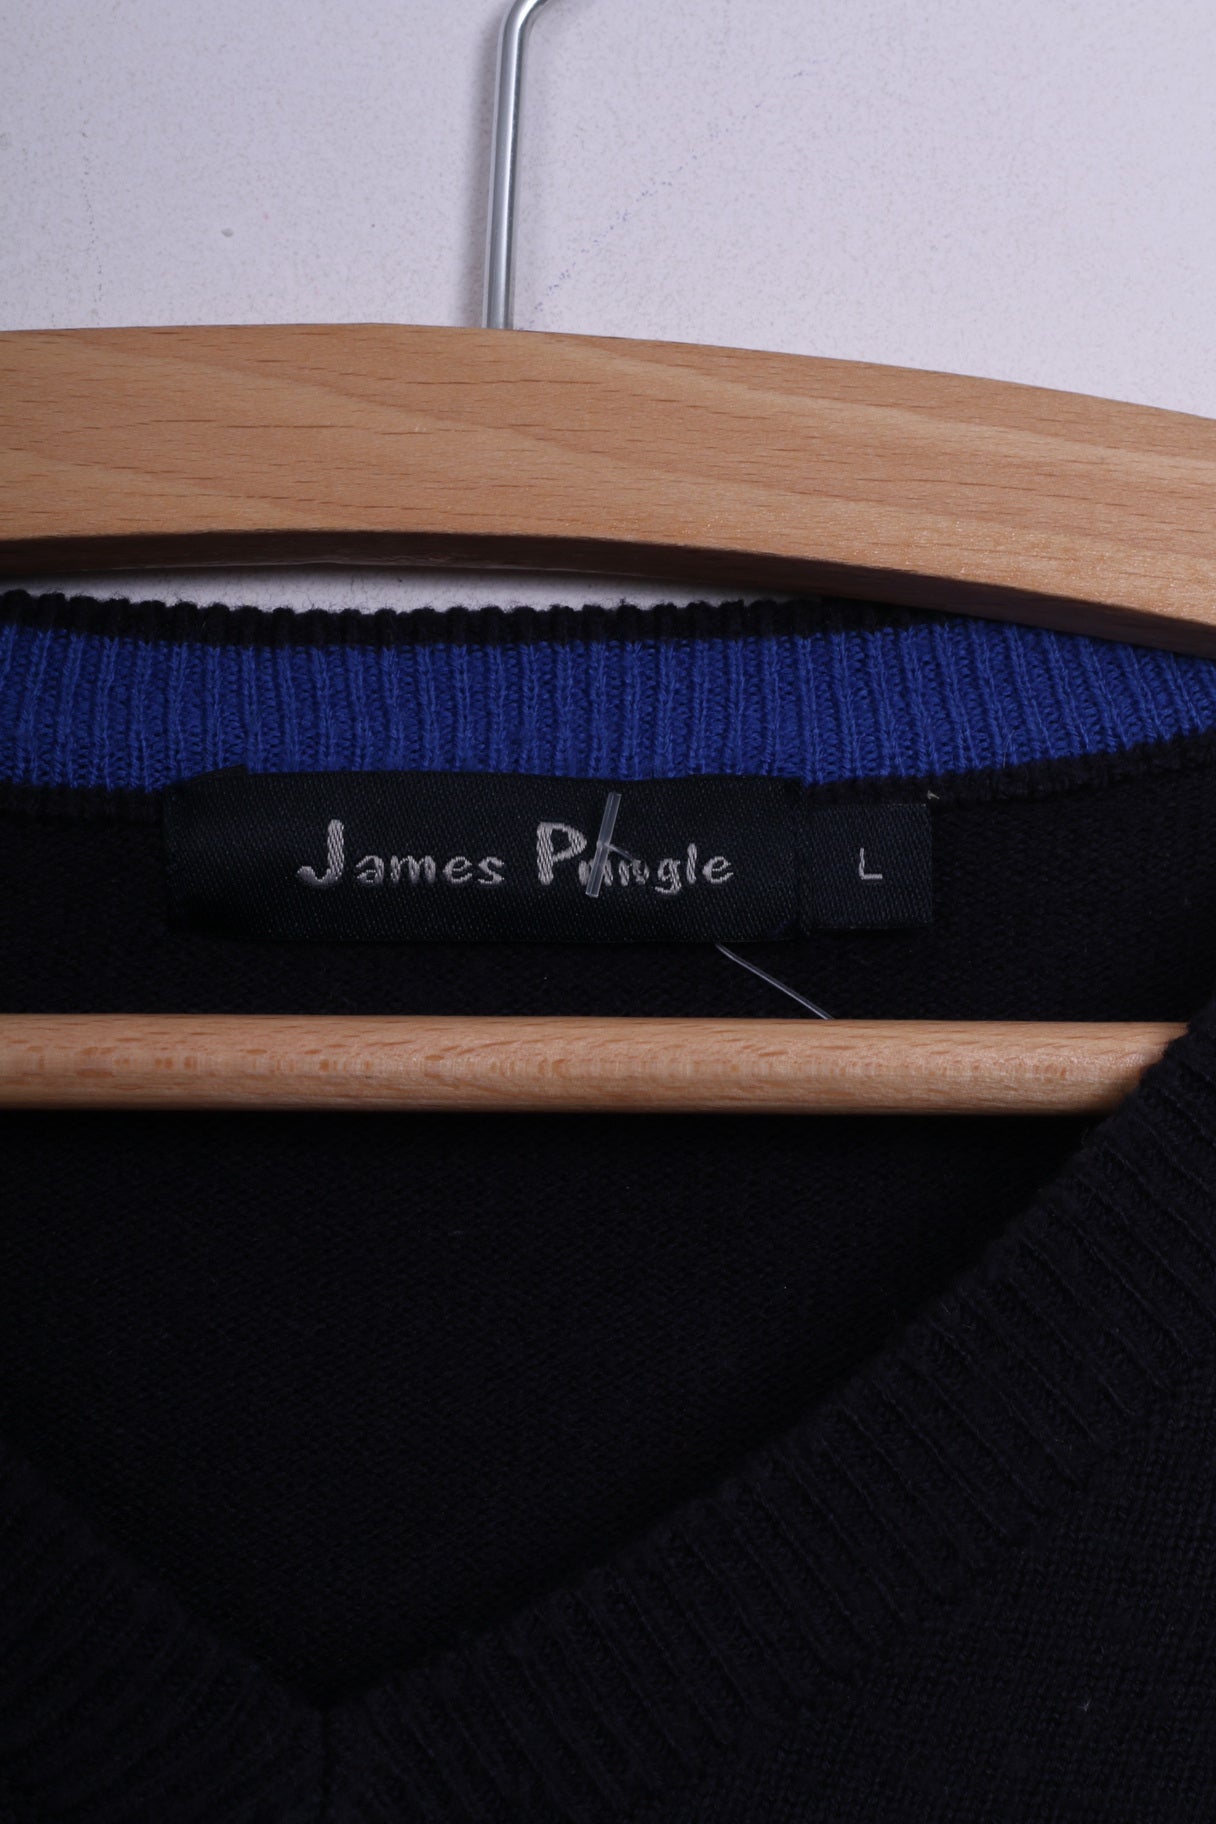 James Pringle Mens L Jumper Sweater Lightweight Navy V Neck